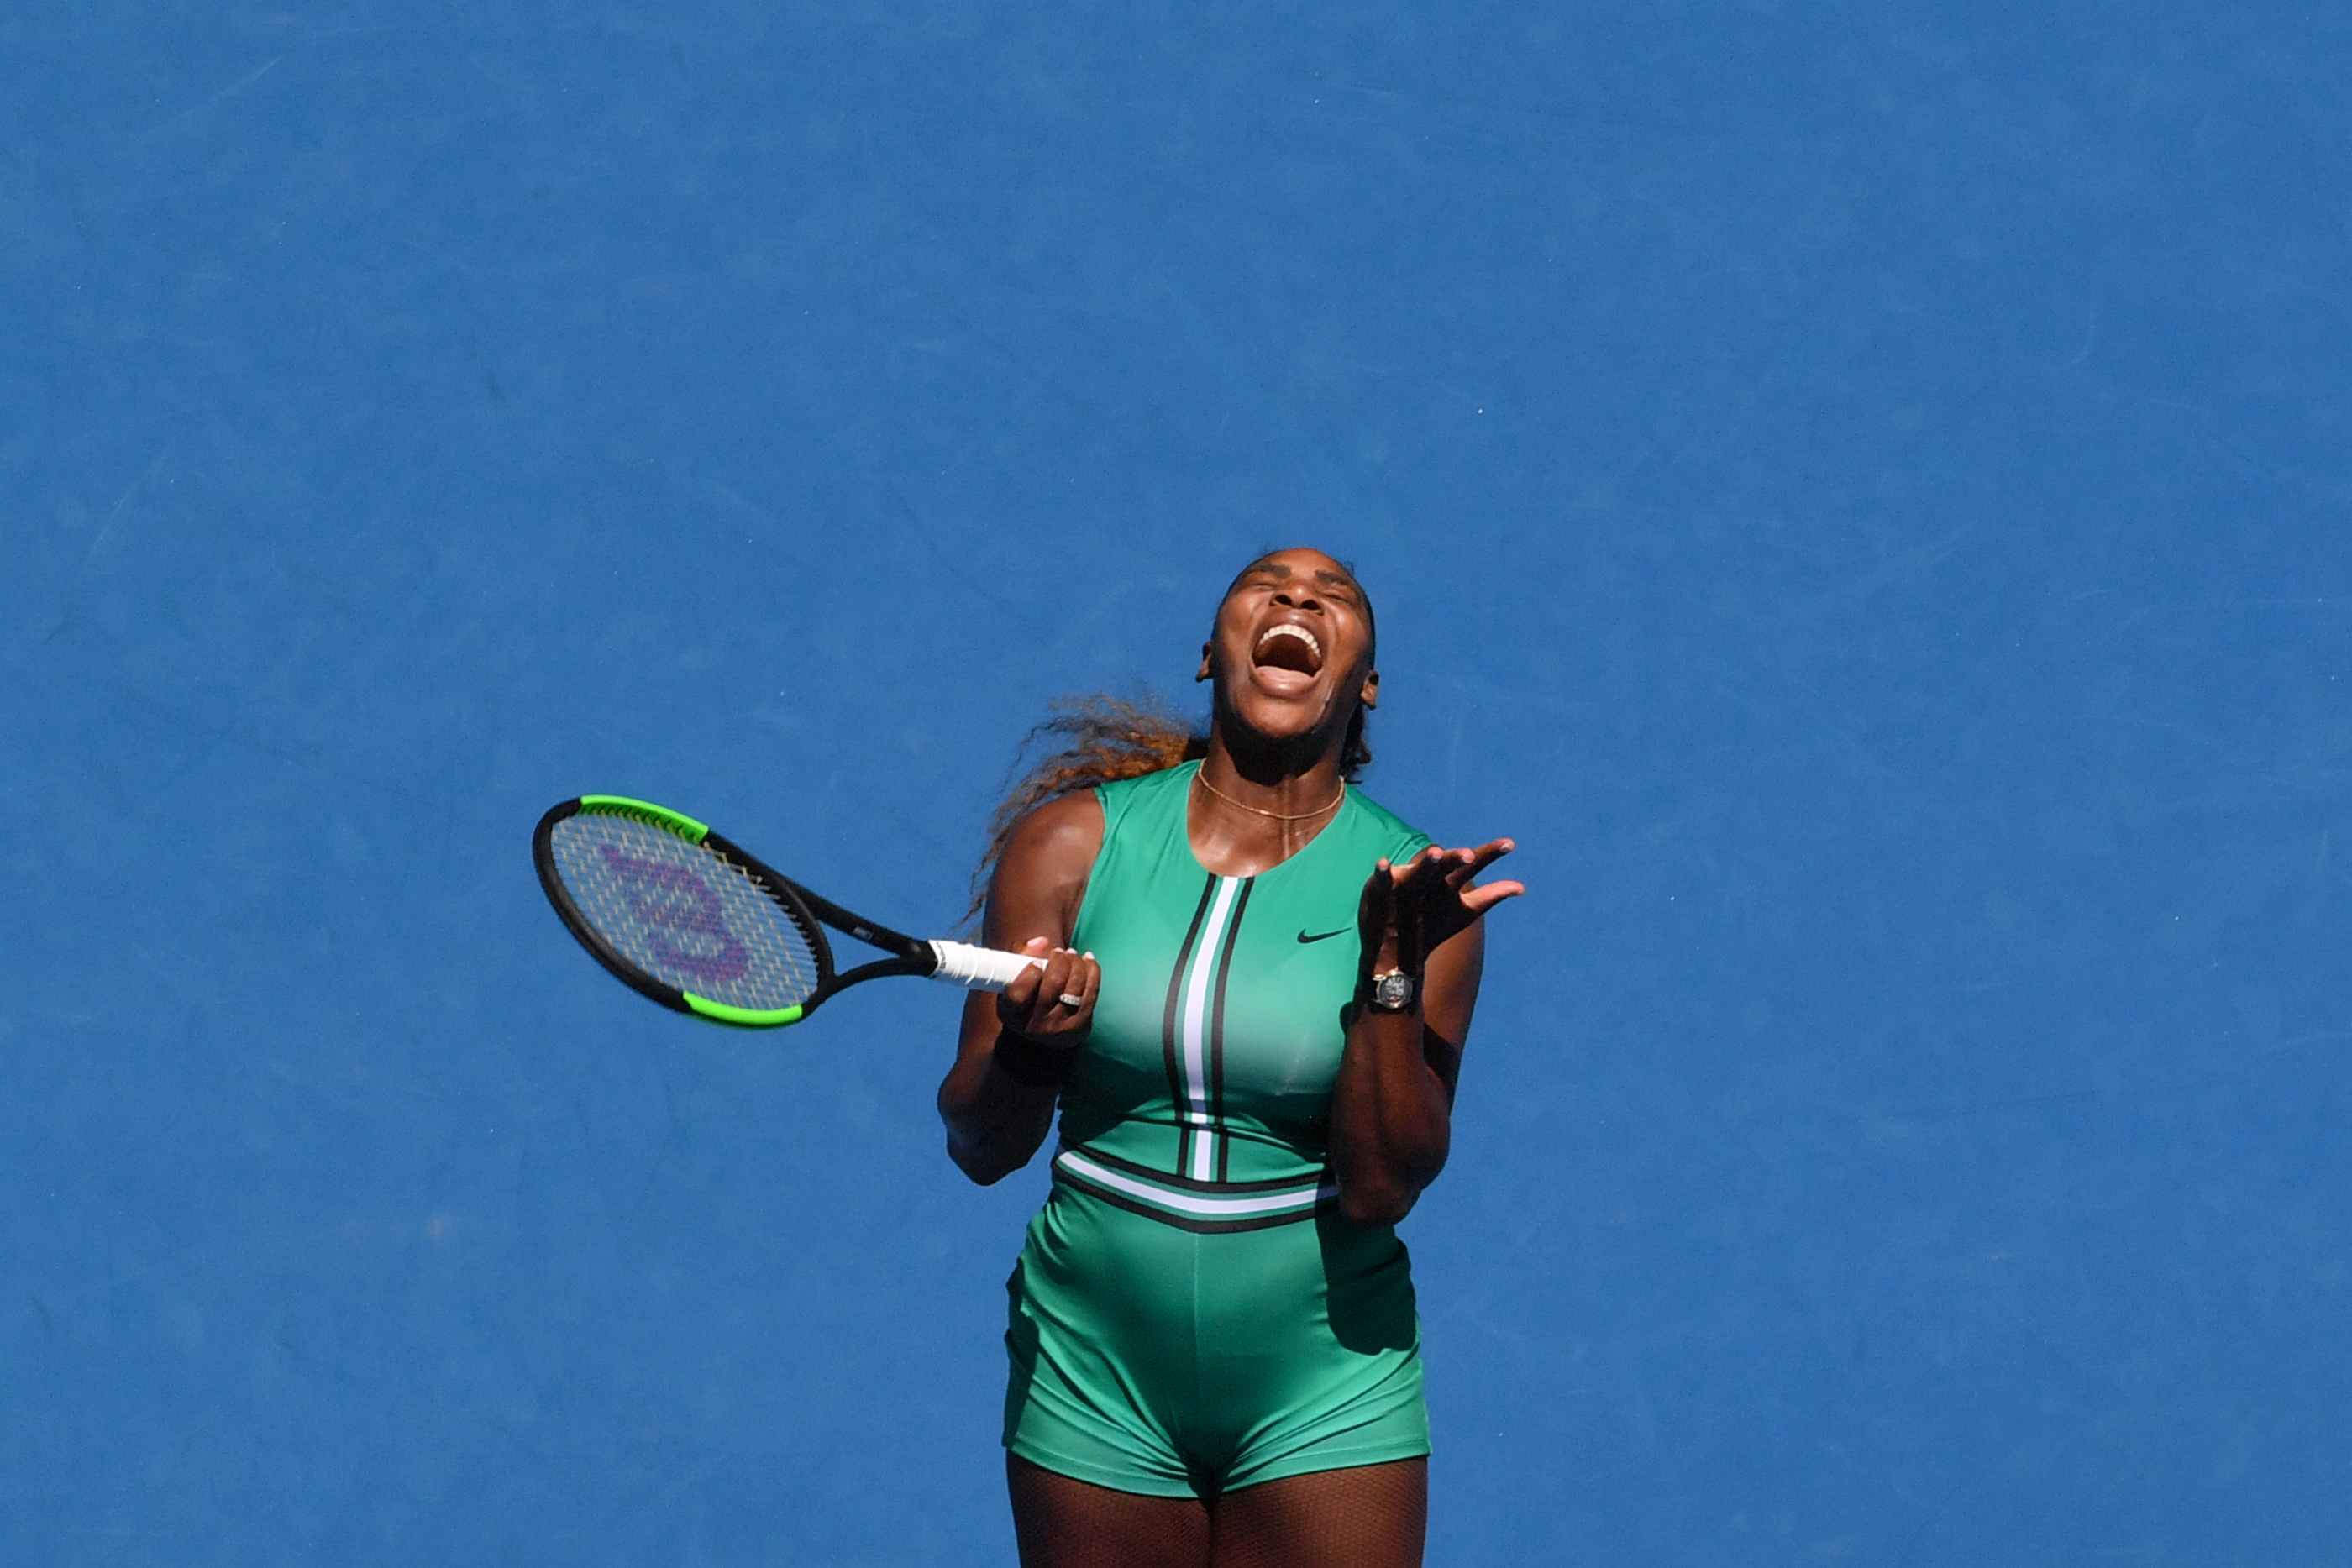 Az utolsó szettben 5:1-re vezetett, de végül mégis kikapott Serena Williams az Australian Open